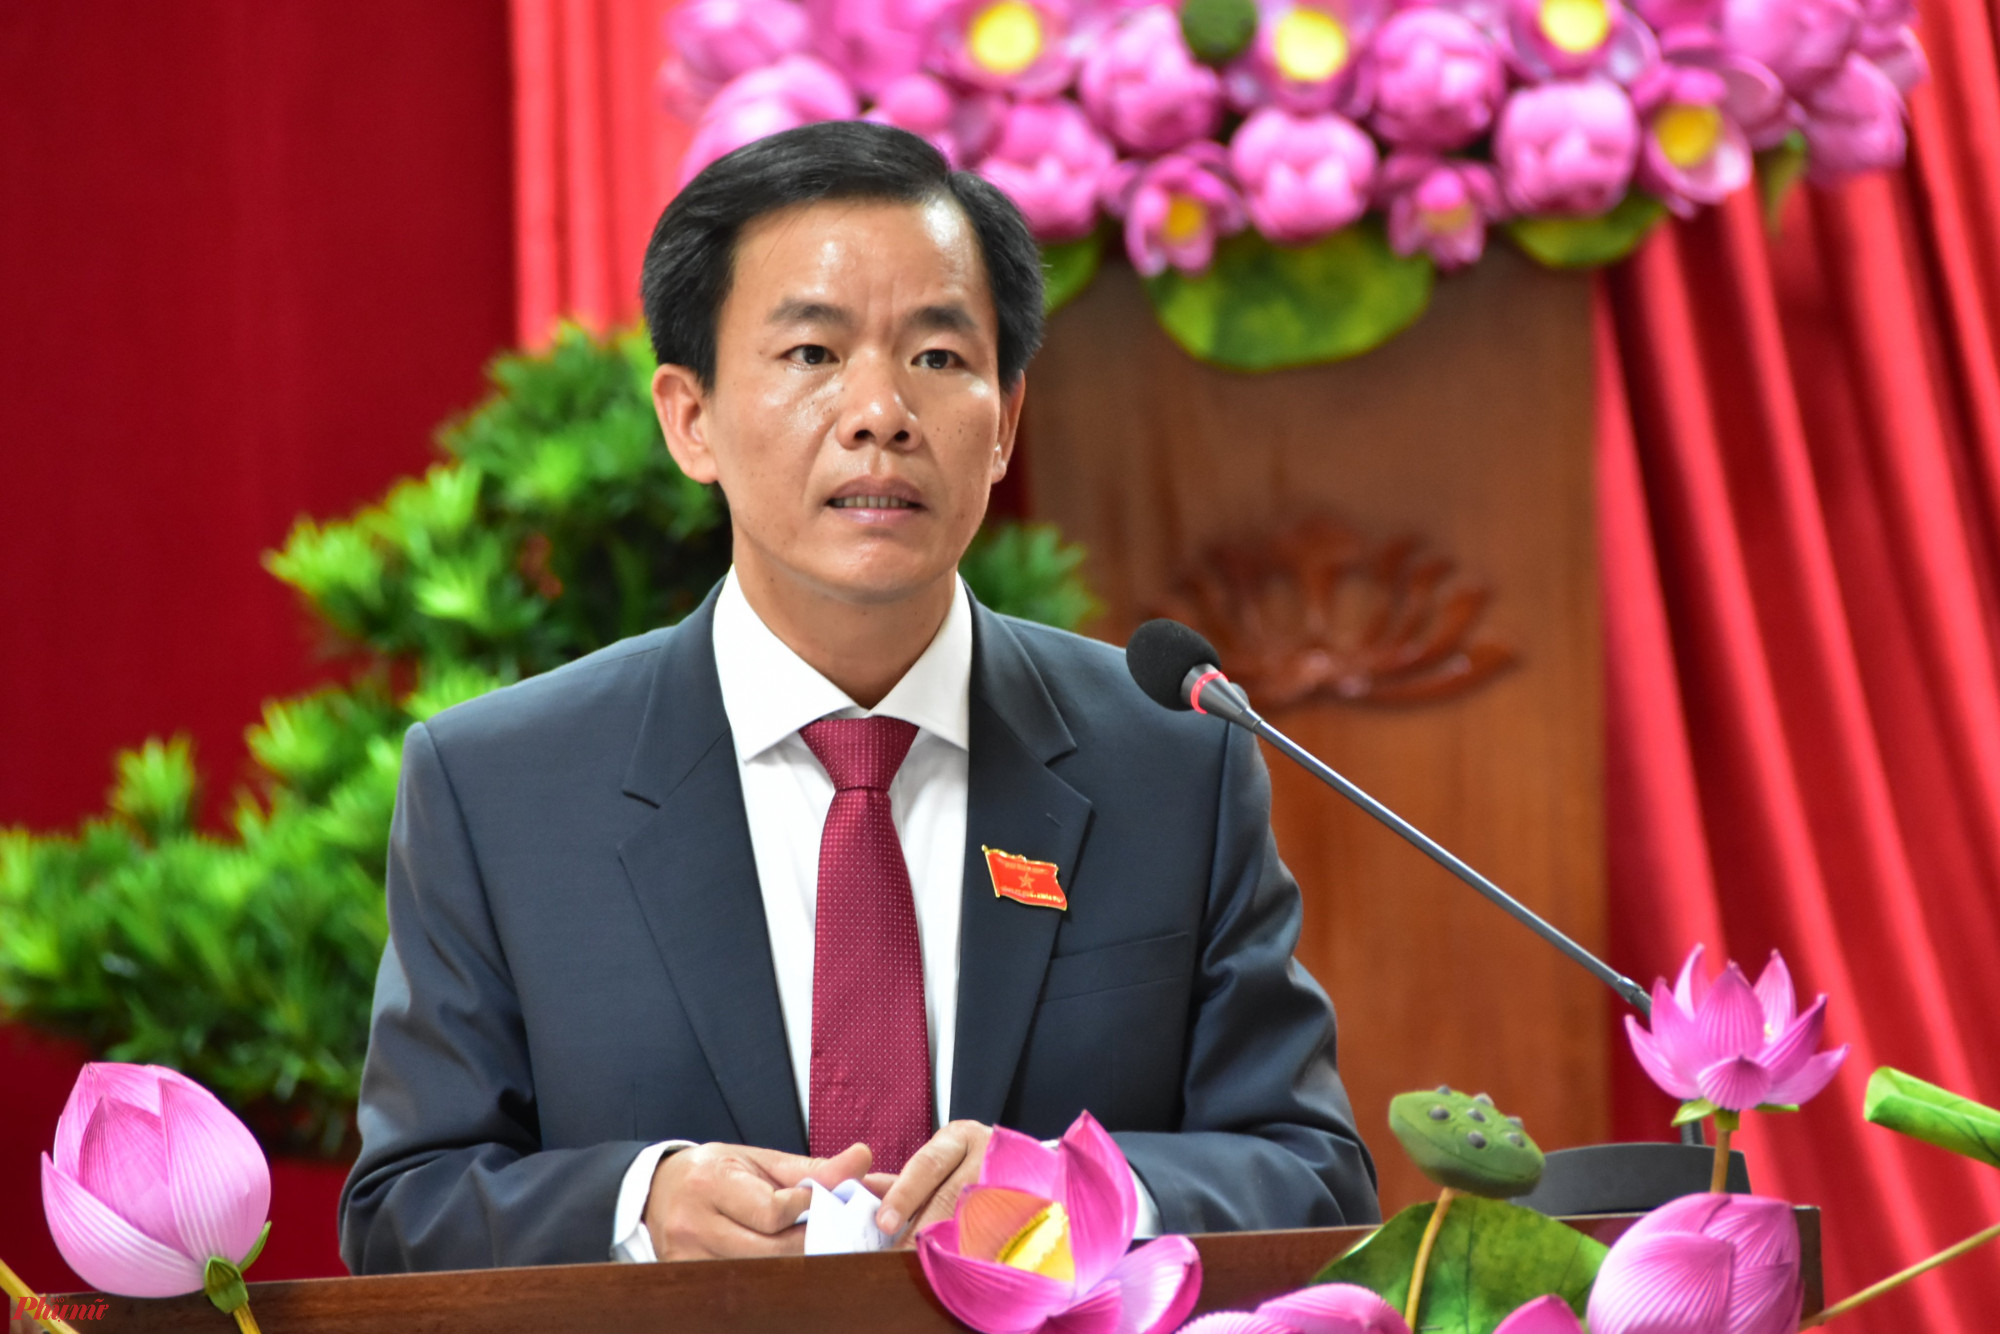 Ông Nguyễn Văn Phương, tân chủ tịch UBND tỉnh Thừa Thiên - Huế phát biểu nhận nhiệm vụ